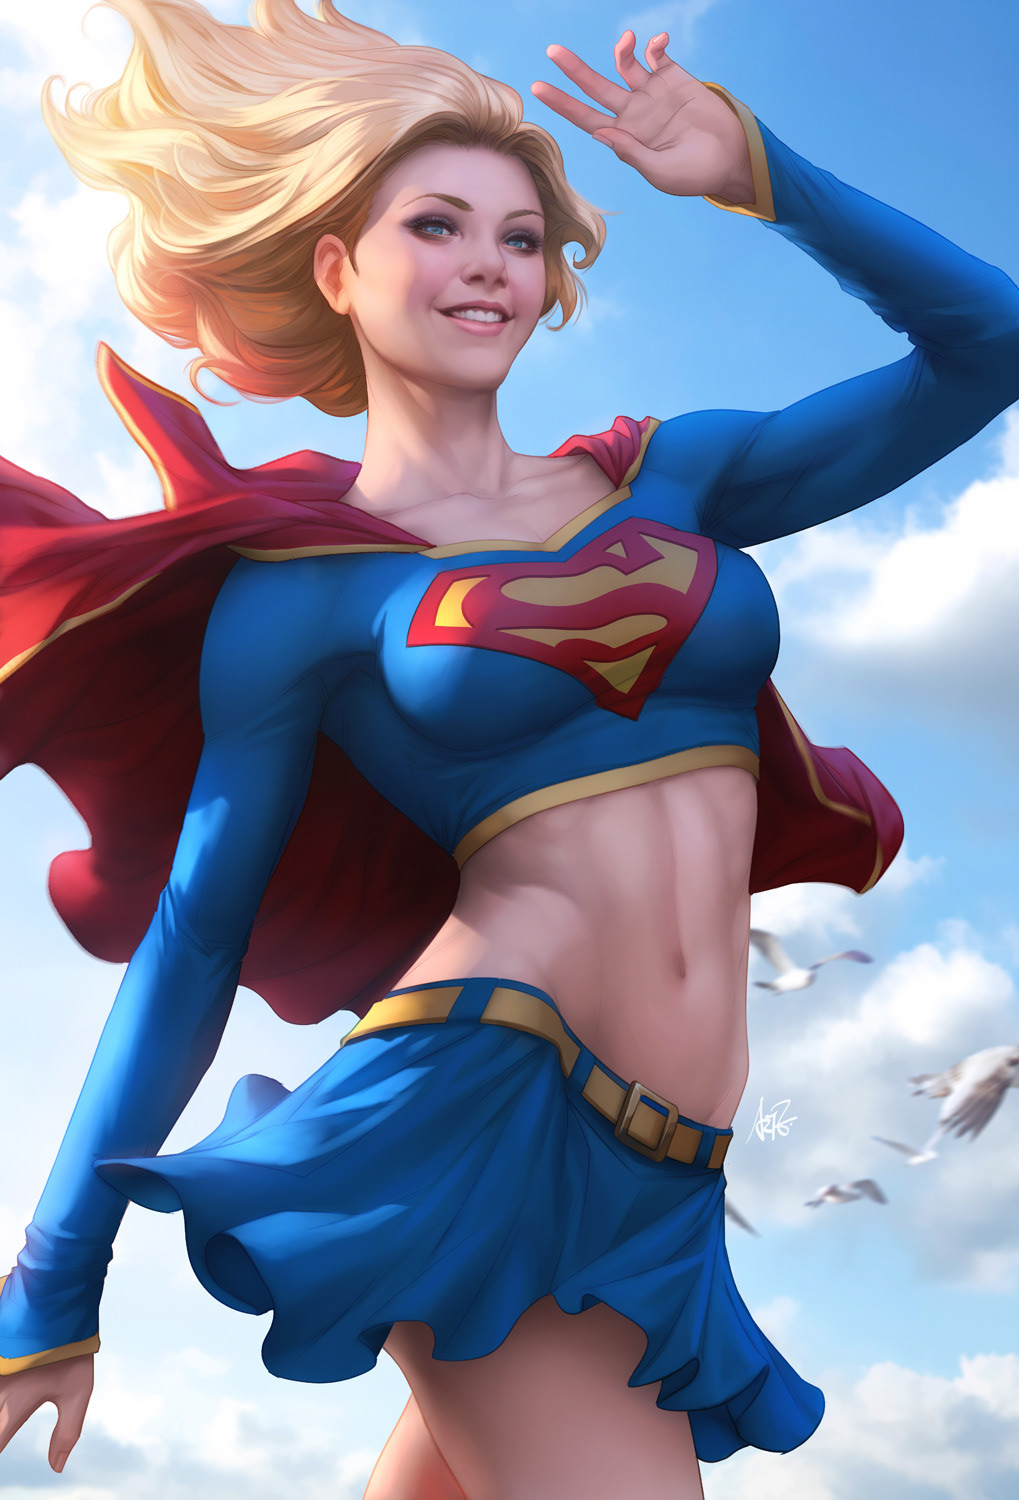 Women Supergirl Artgerm DC Comics 1019x1500